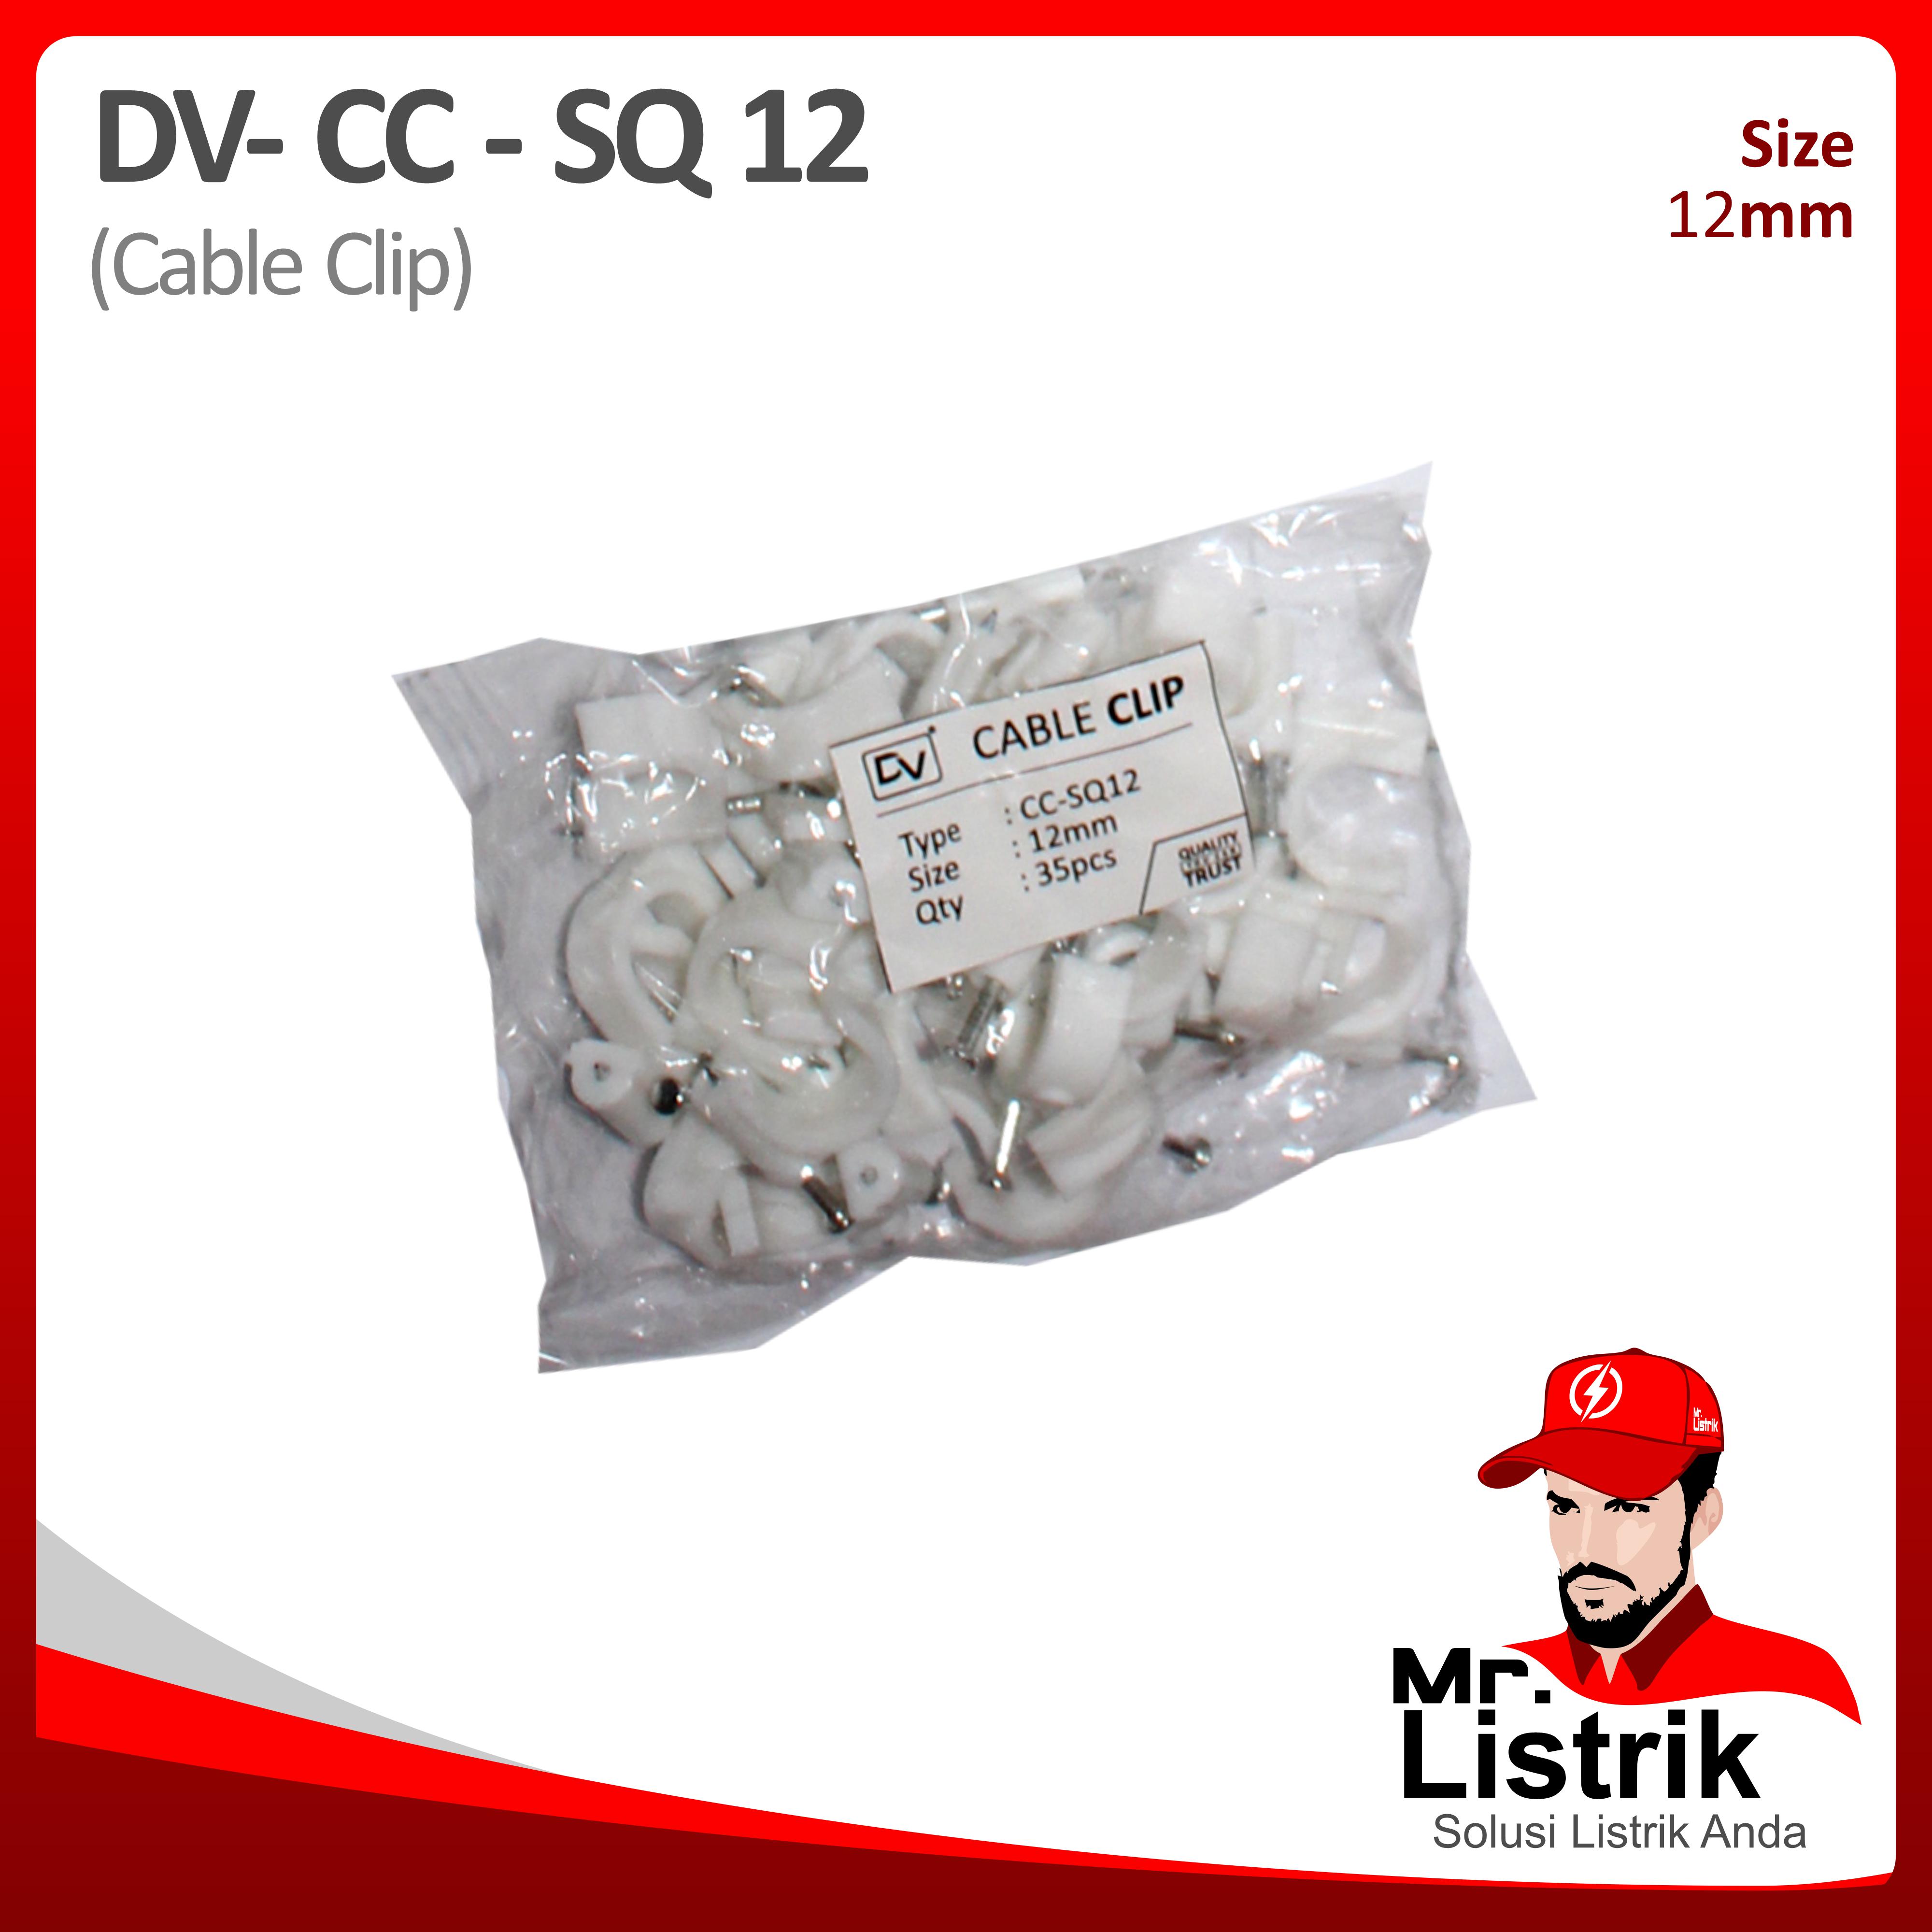 Cable Clip 12mm DV CC-SQ 12